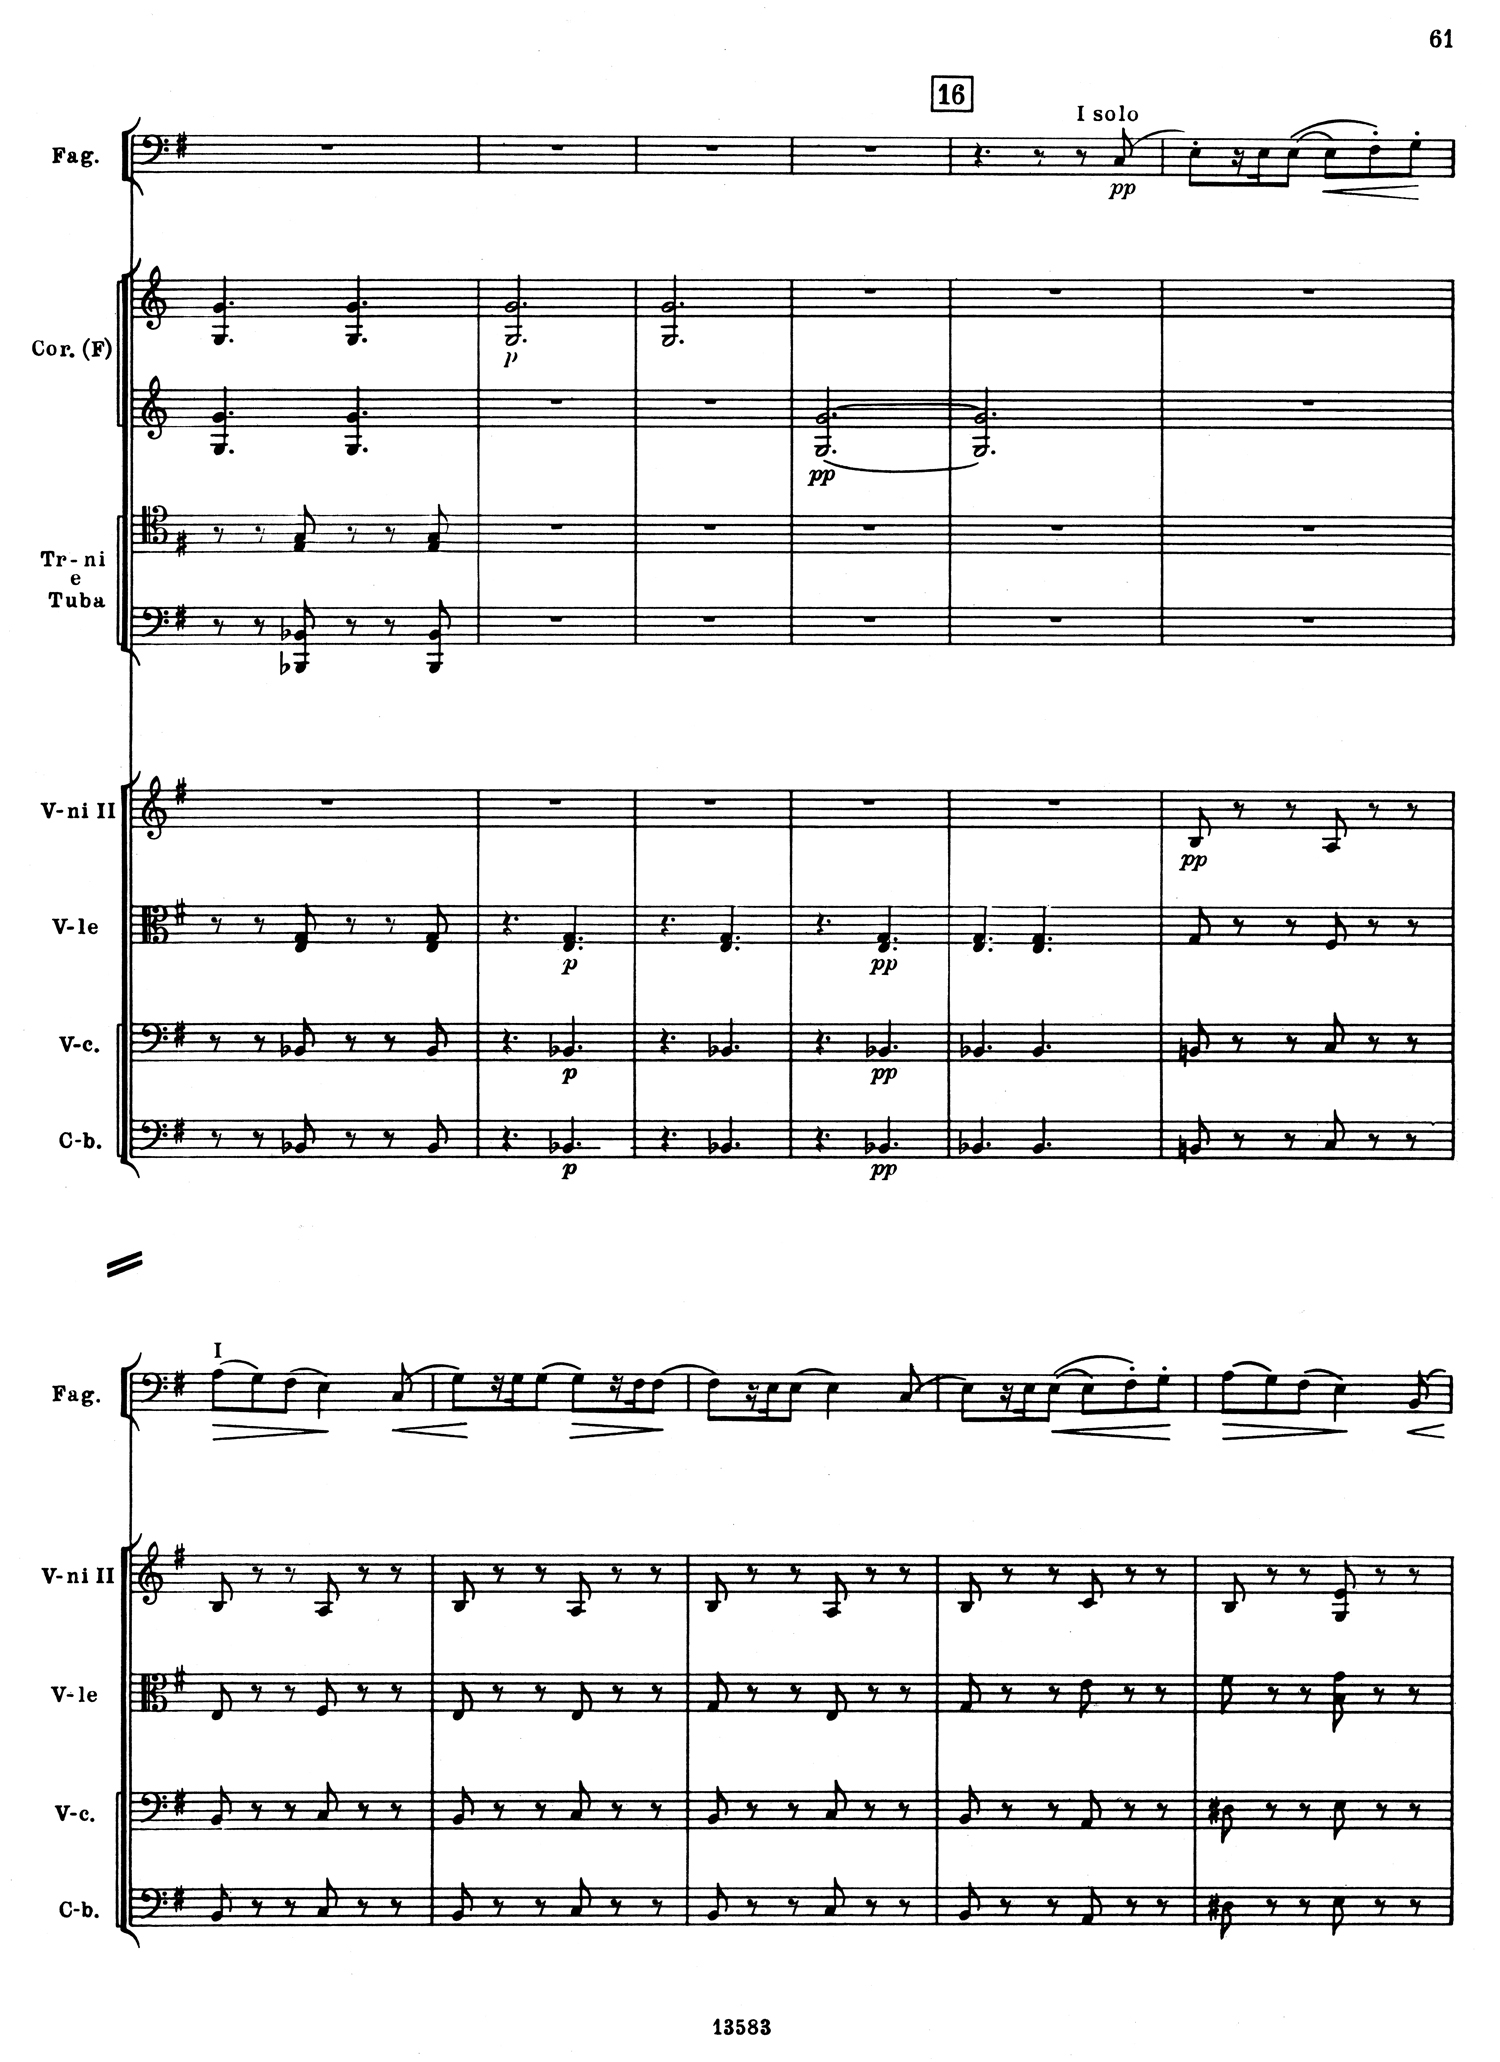 Tchaikovsky 5 Mvt 1 Score 1.jpg